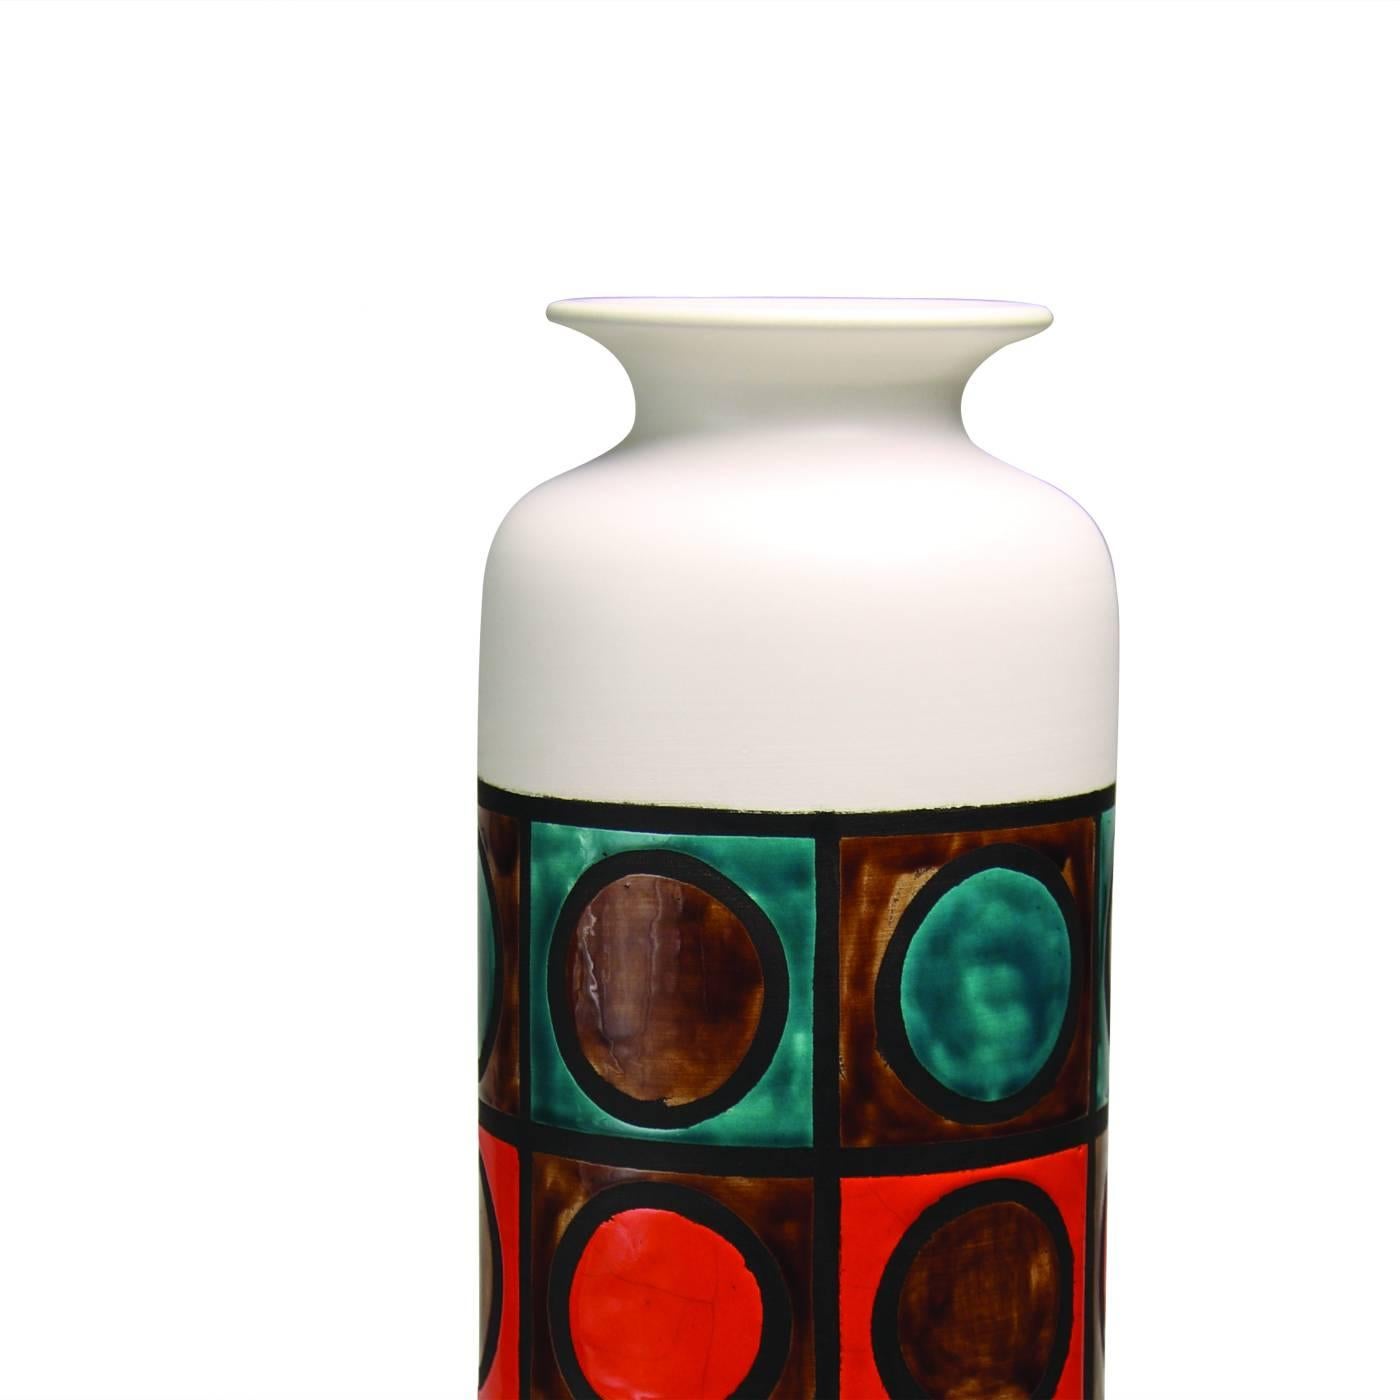 Ce vase saisissant en argile blanche a une forme cylindrique simple avec une finition blanche, et une zone centrale décorée d'une série d'anneaux multicolores enfermés dans des carrés, chacun marqué d'un bord sombre. Cette pièce, conçue par Aldo